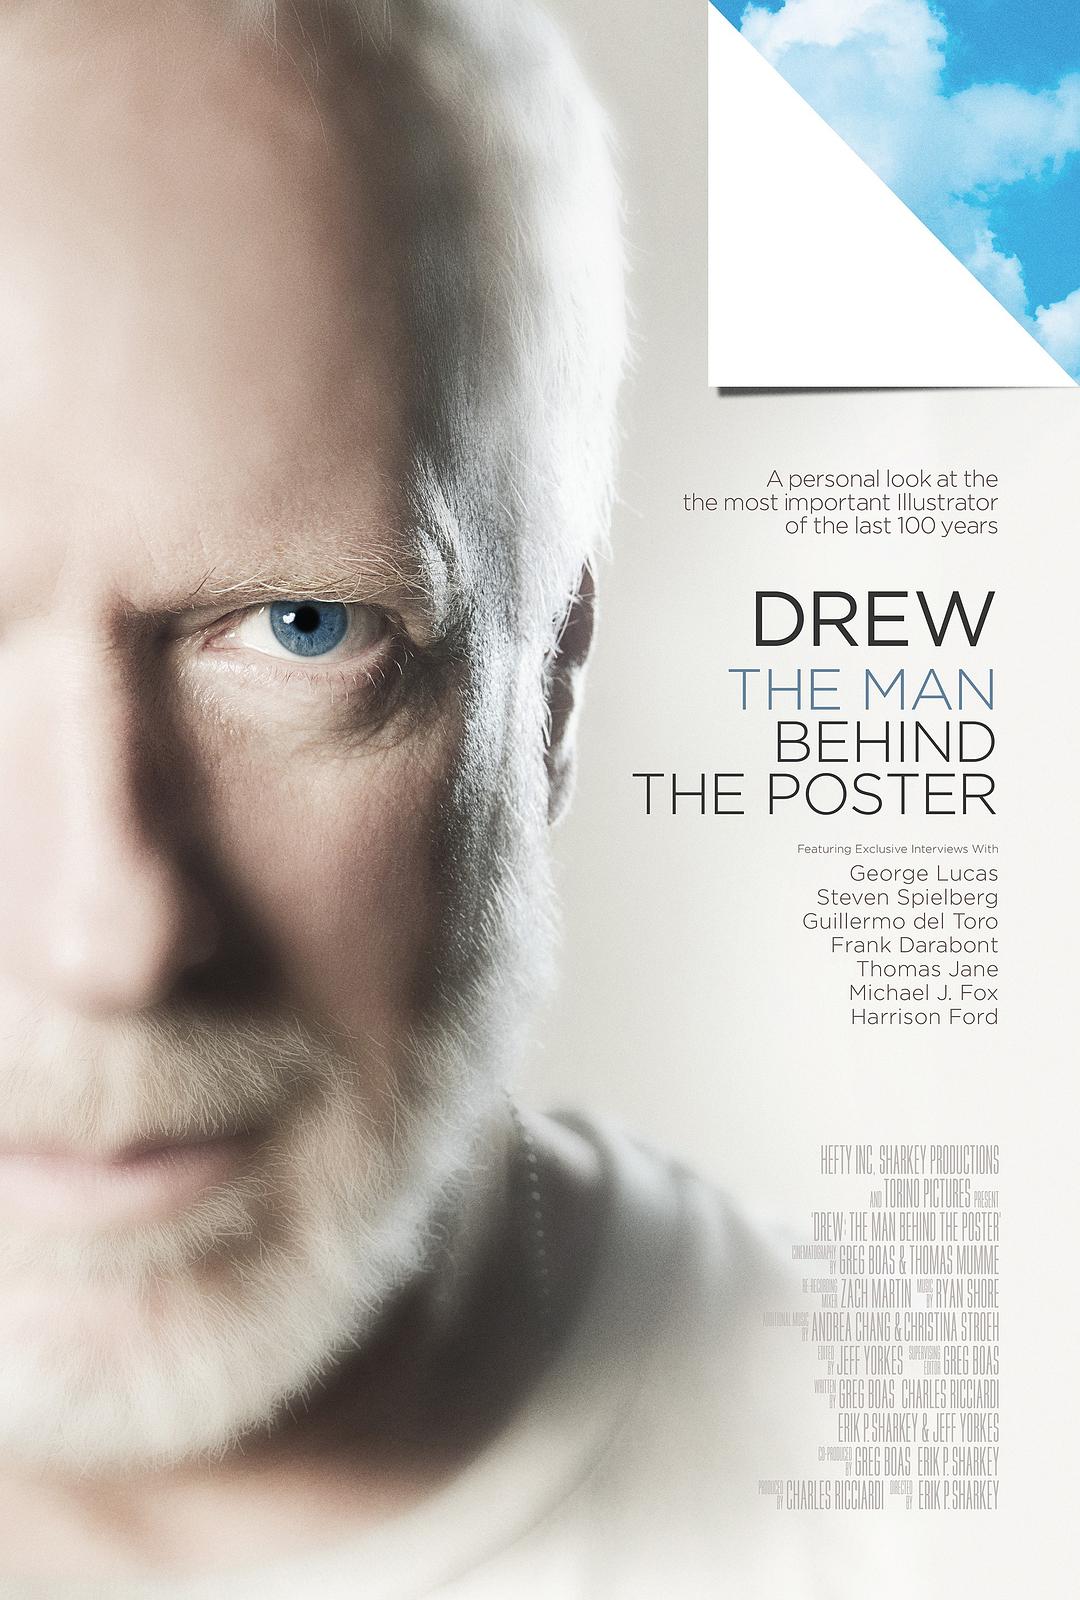 德鲁·舒赞:电影海报的幕后伟人 Drew.The.Man.Behind.The.Poster.2013.1080p.WEBRip.x264-RARBG 1.86GB-1.png